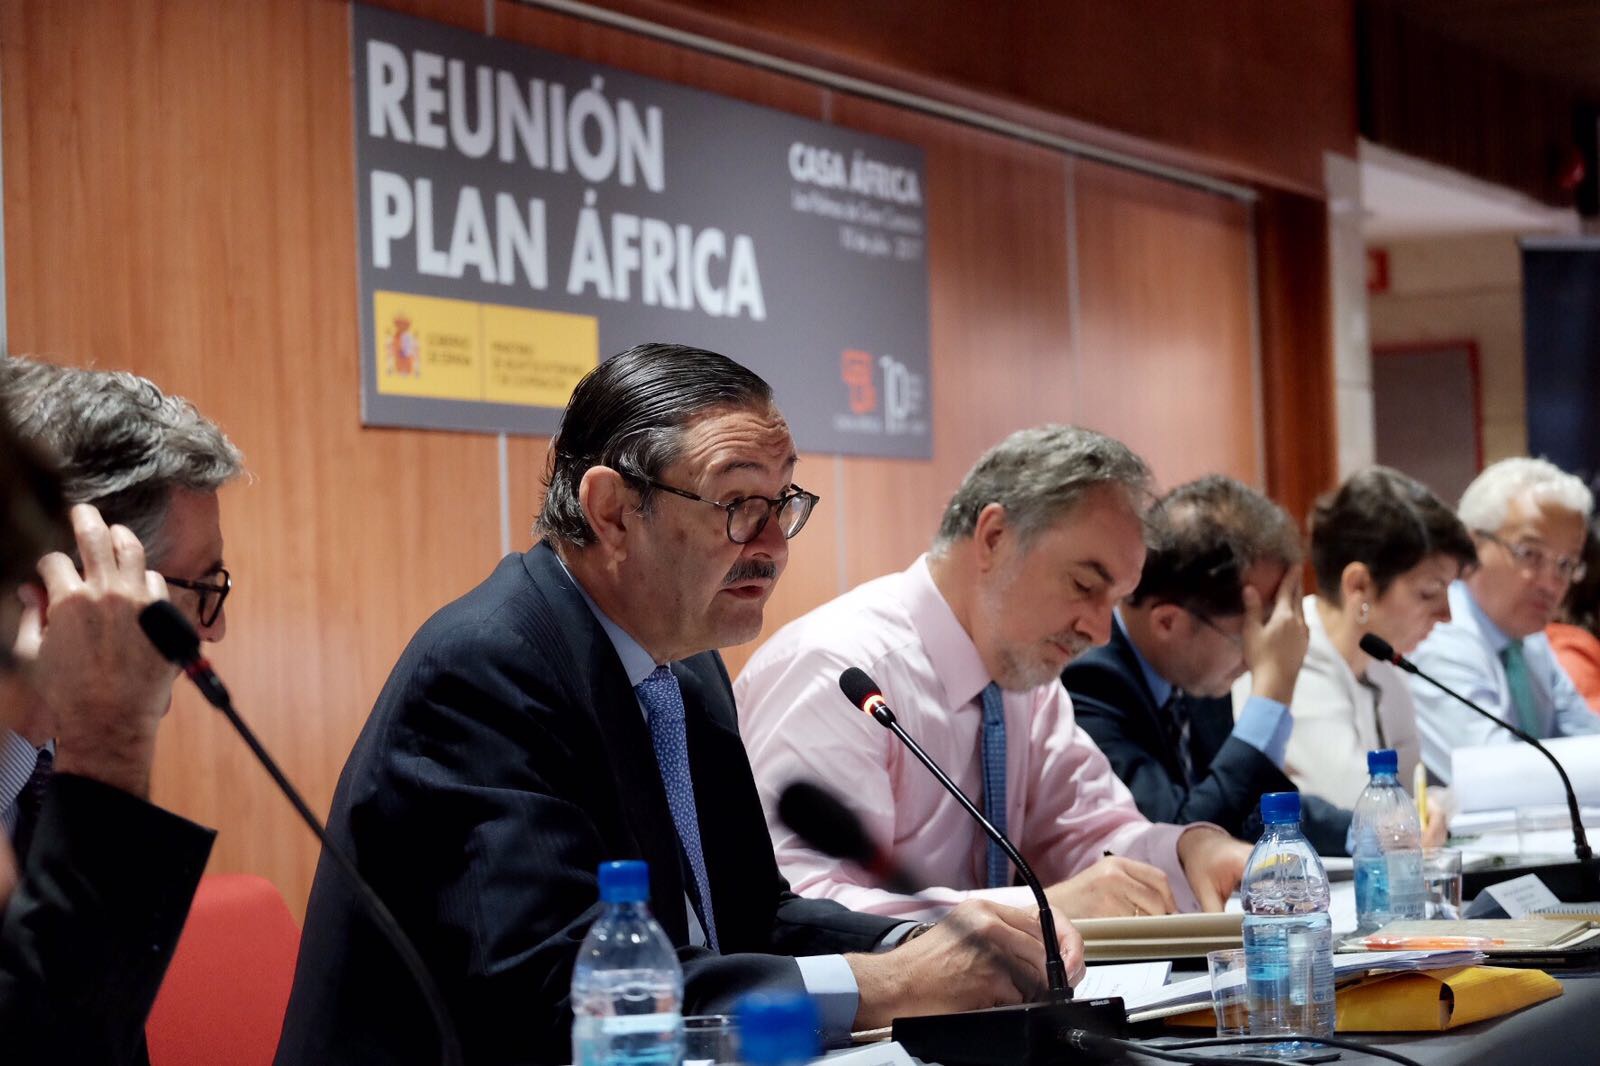 Reunión del Plan África